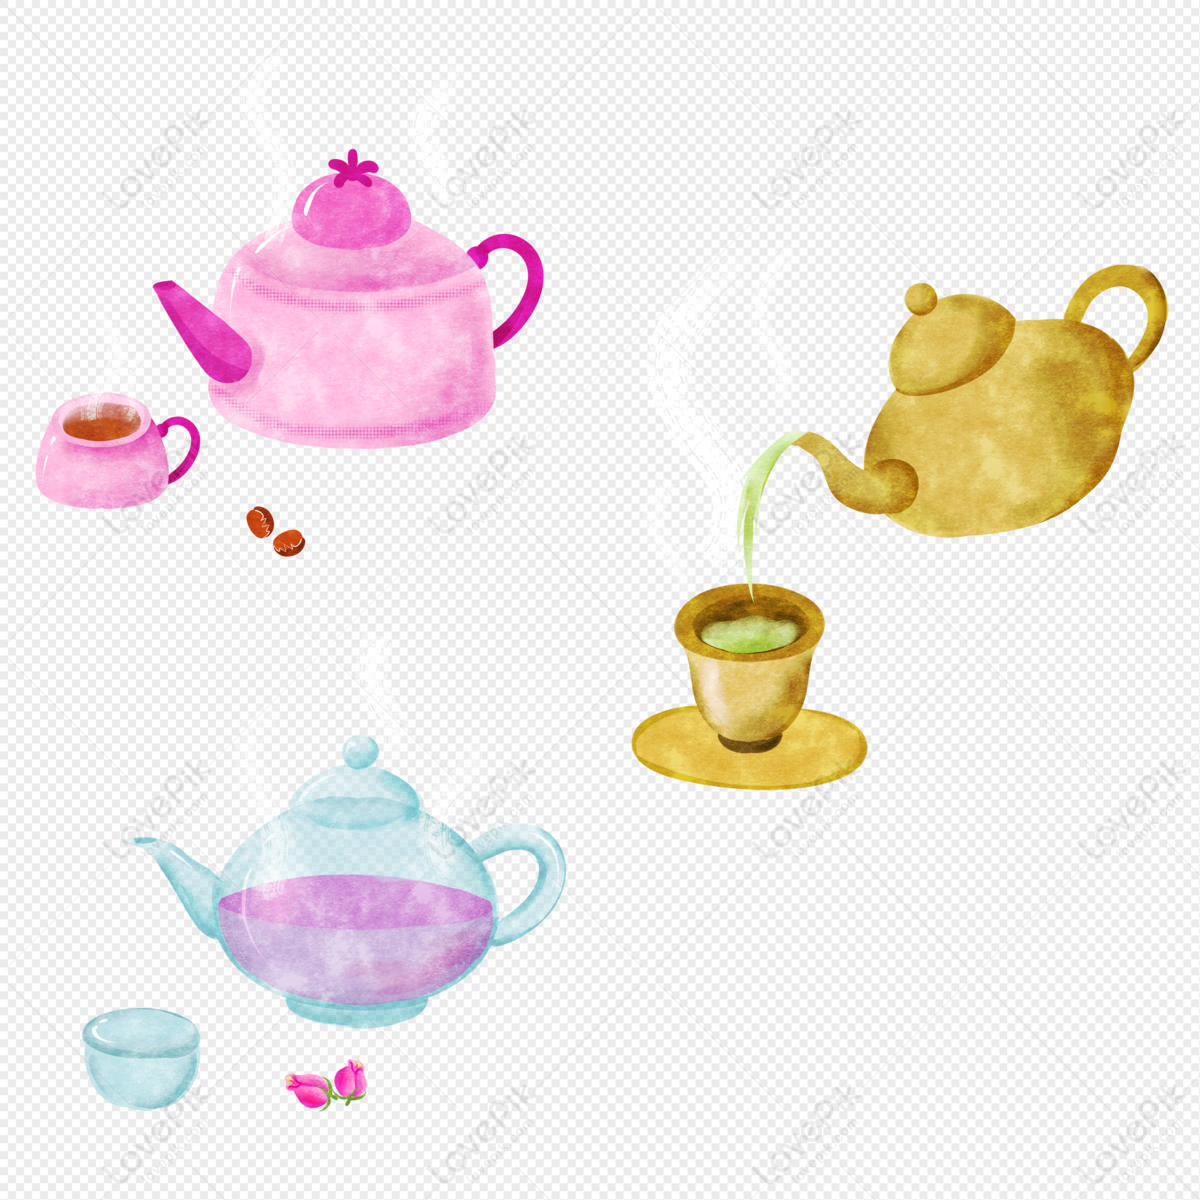 tea party clip art free downloads